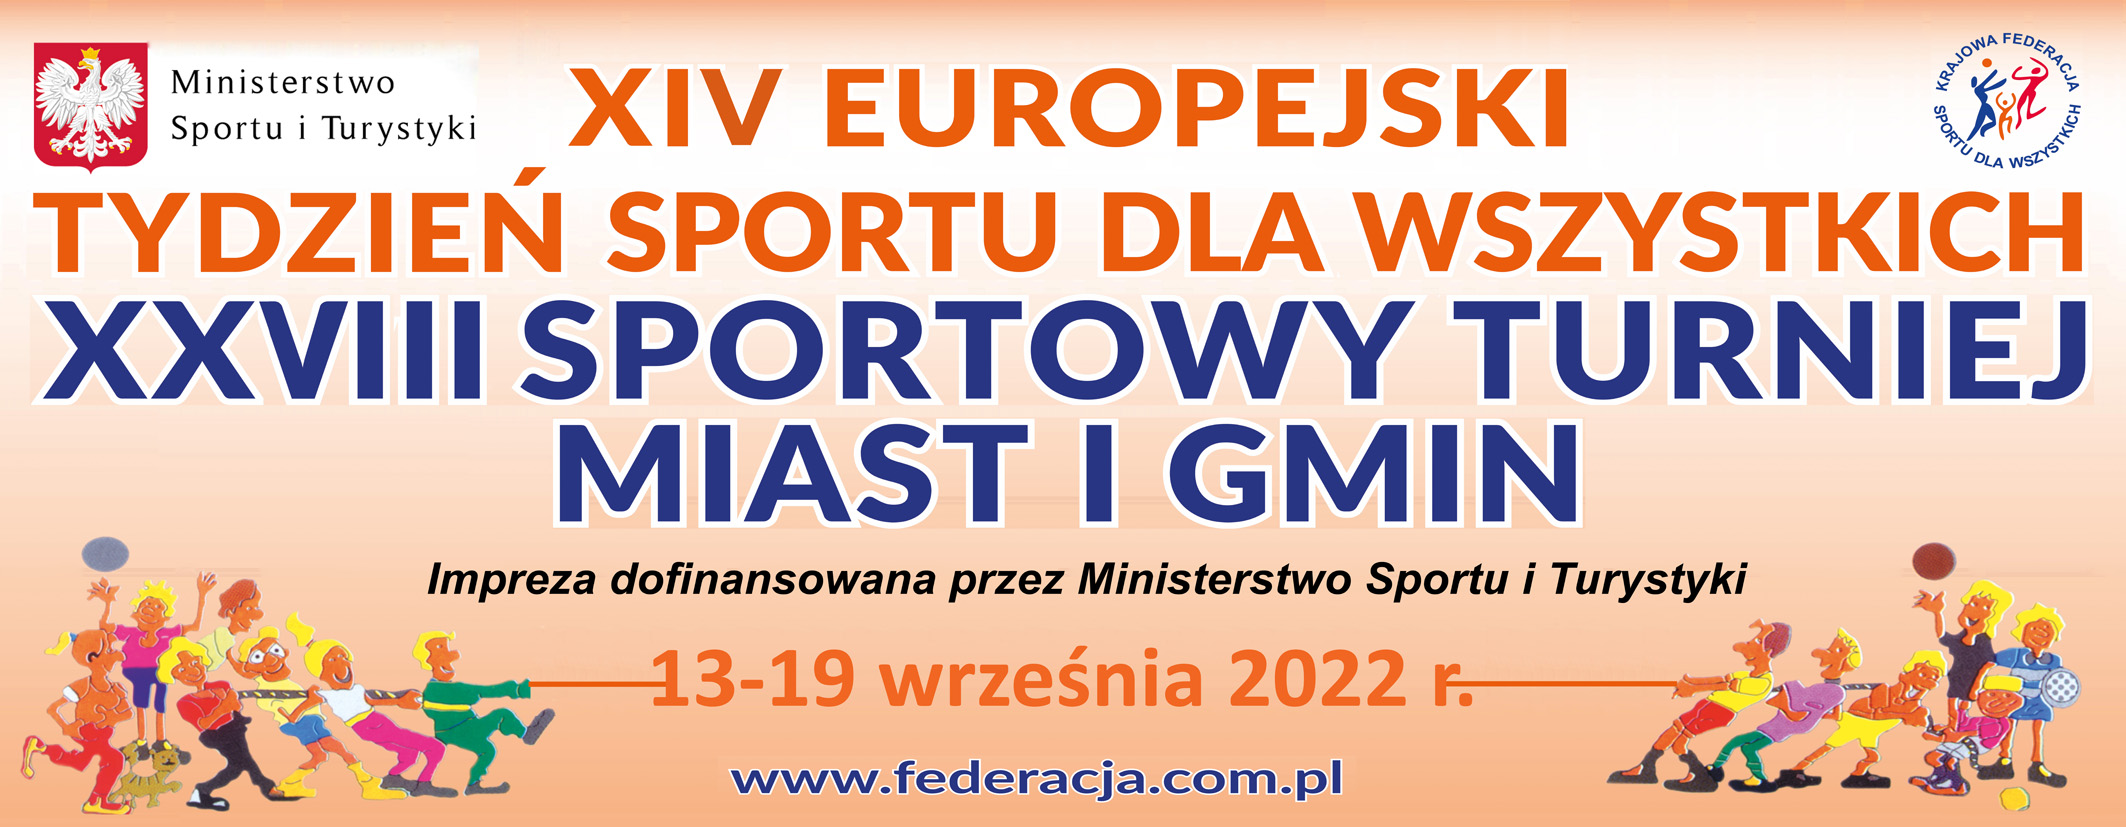 XIV Europejski Tydzień Sportu dla Wszystkich XXVIII - Sportowy Turniej Miast i Gmin 2022